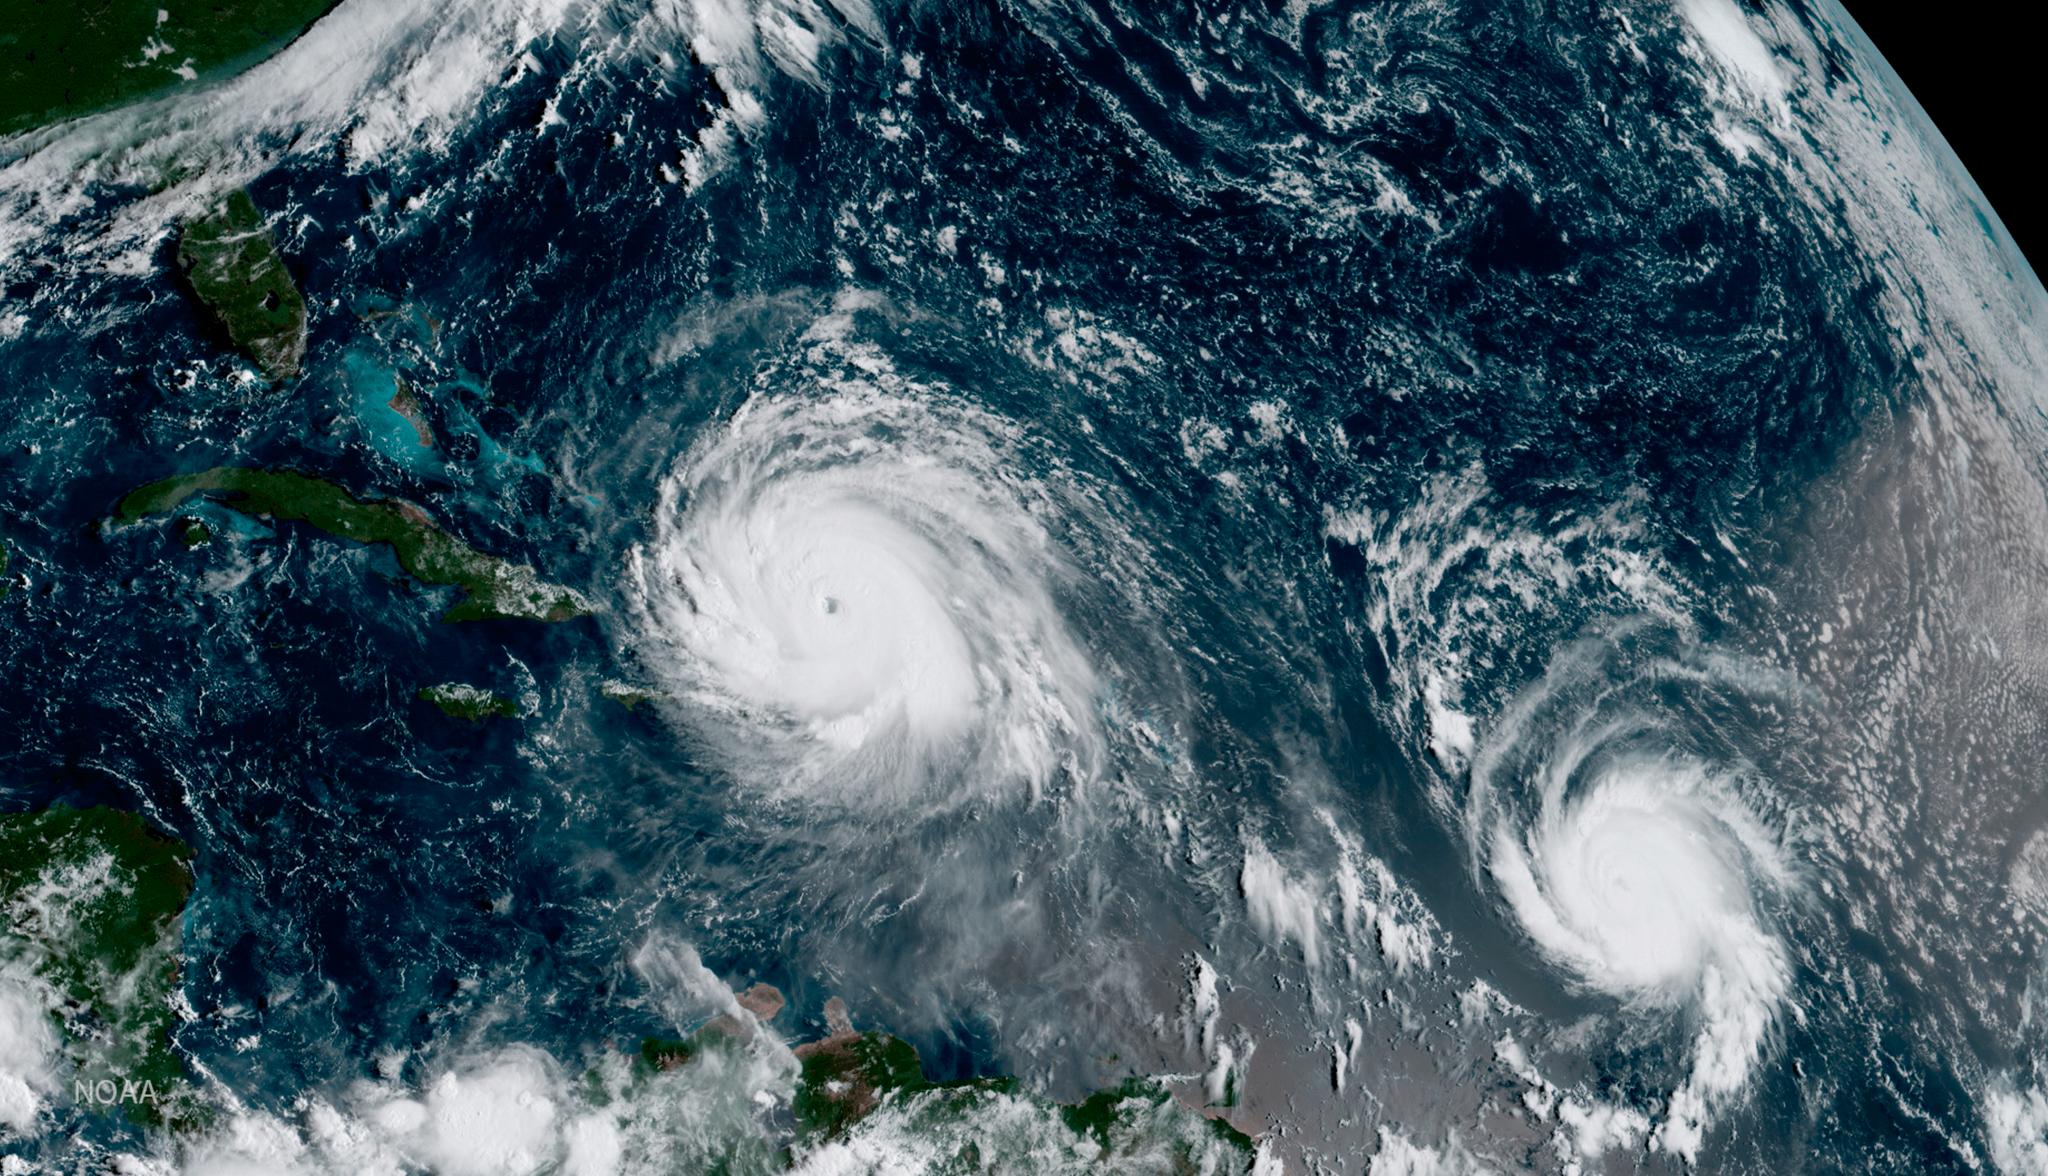 Irma (til venstre) er allerede den kraftigste orkanen som noensinne har vært registrert i Atlanterhavet. Til høyre er orkanen Jose, som trolig ikke vil treffe land i Karibia.